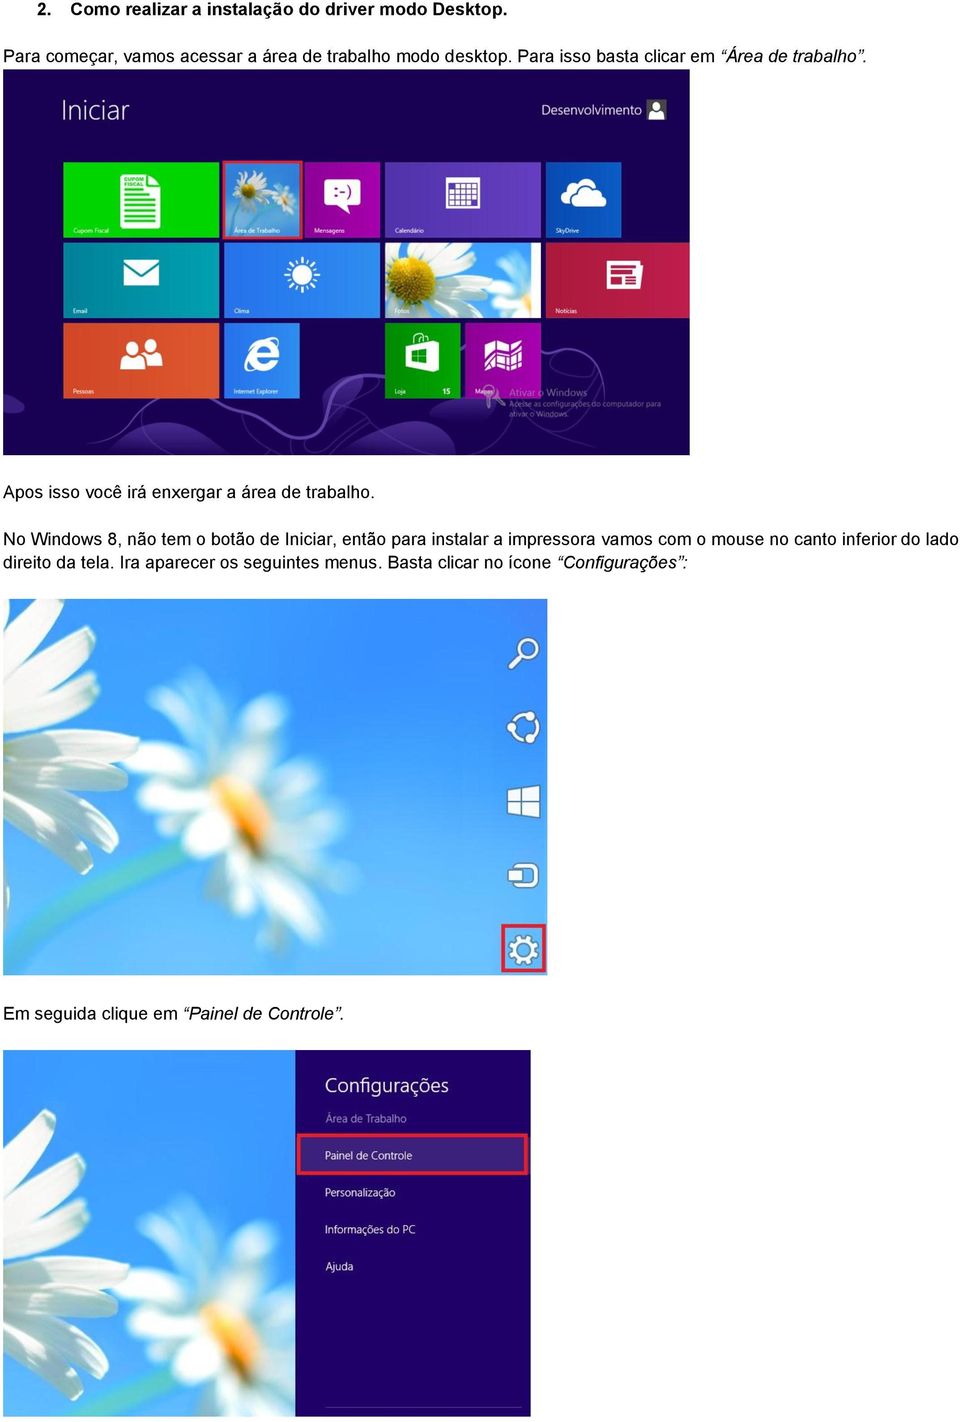 No Windows 8, não tem o botão de Iniciar, então para instalar a impressora vamos com o mouse no canto inferior do